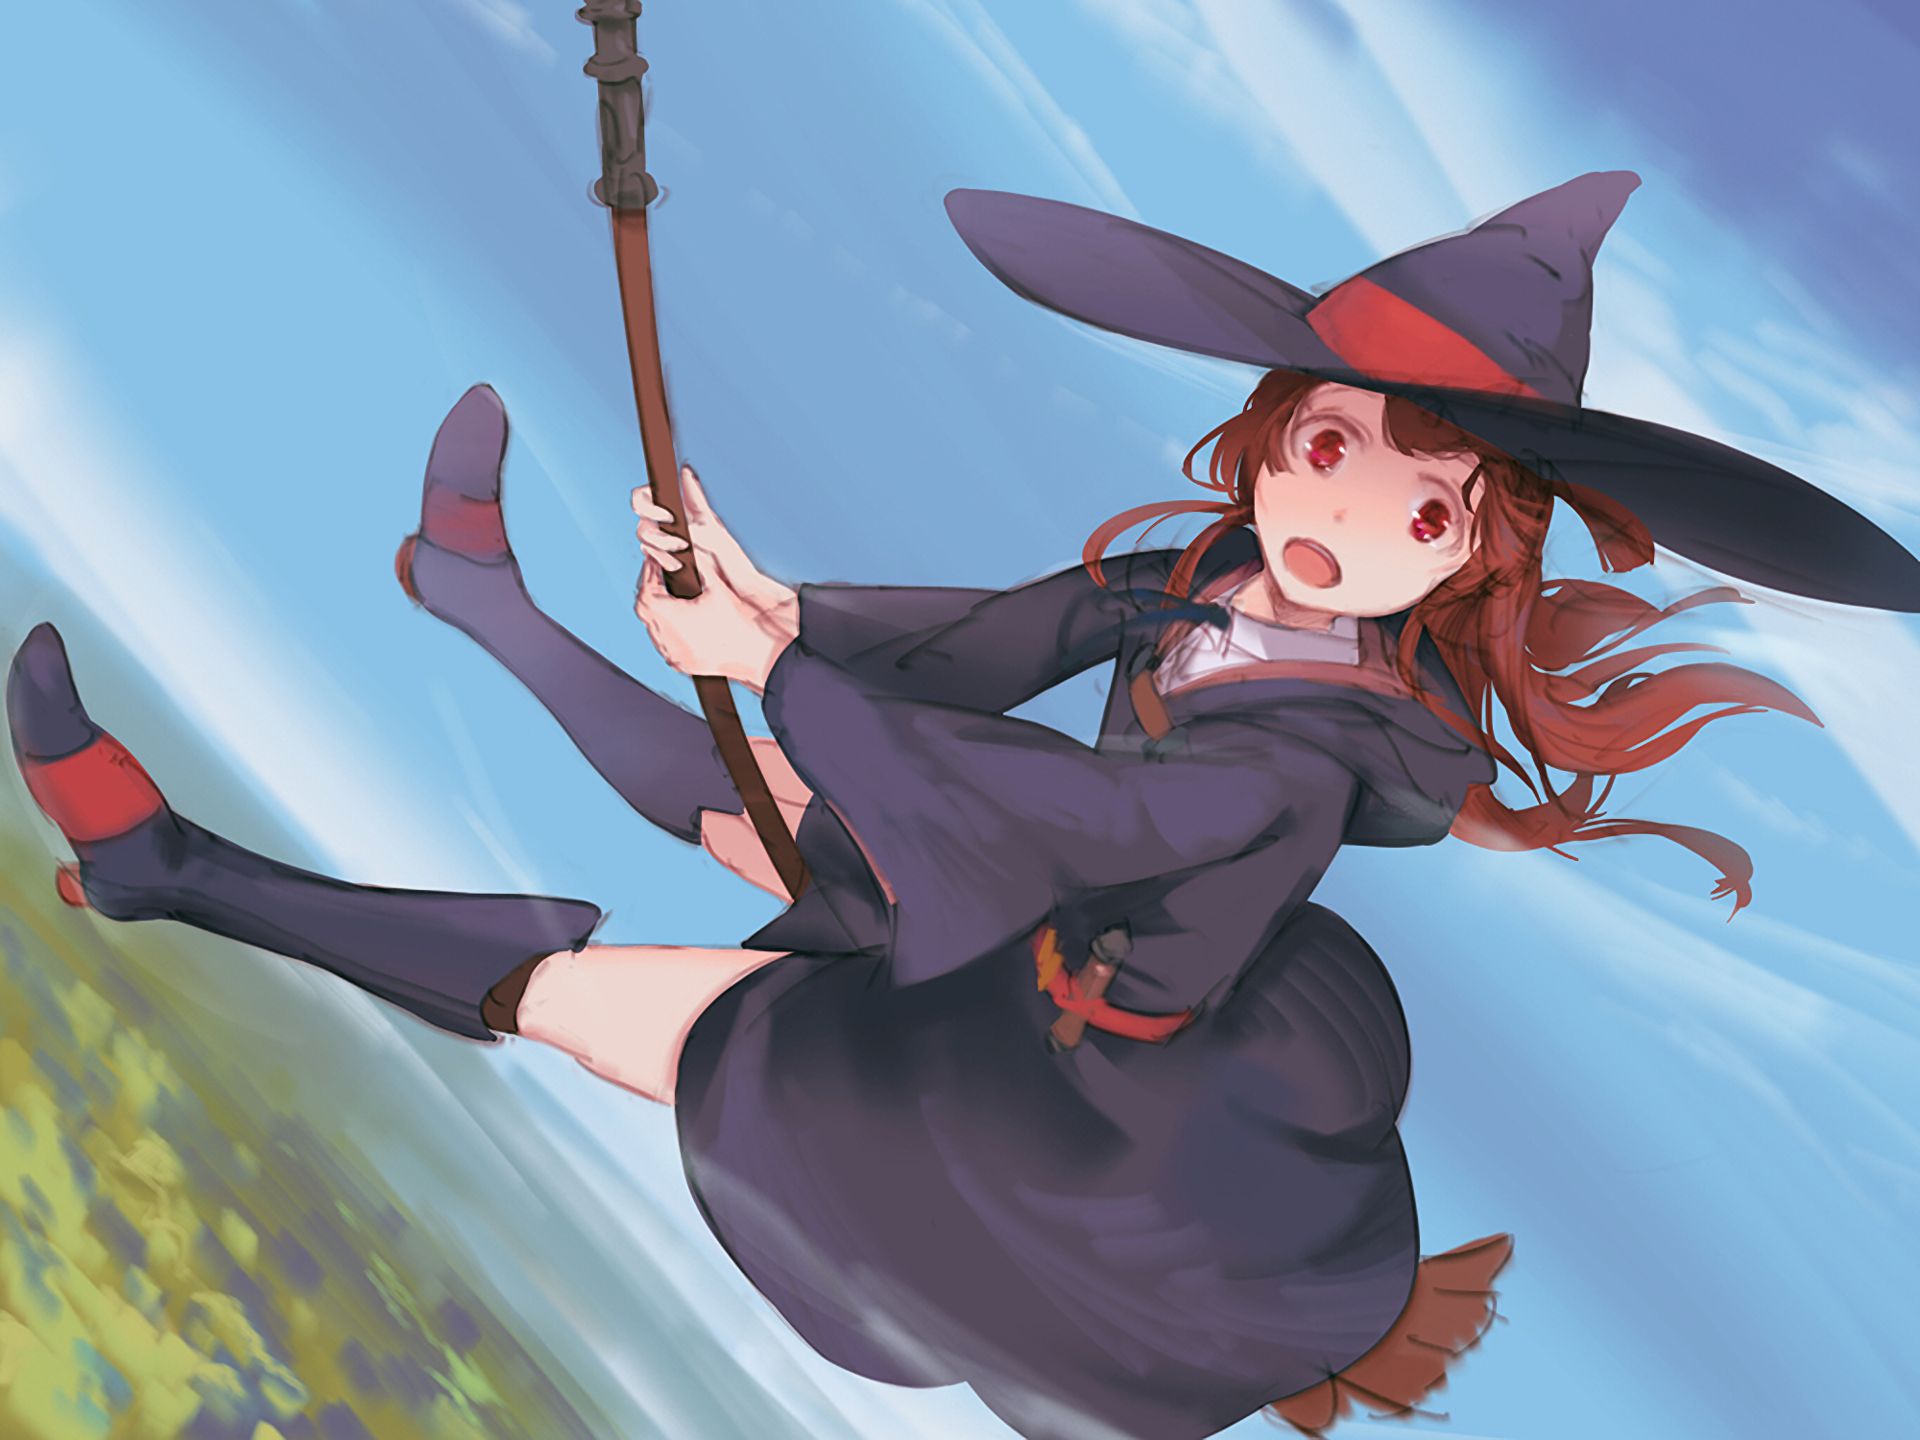 Descarga gratuita de fondo de pantalla para móvil de Animado, Atsuko Kagari, Little Witch Academia.